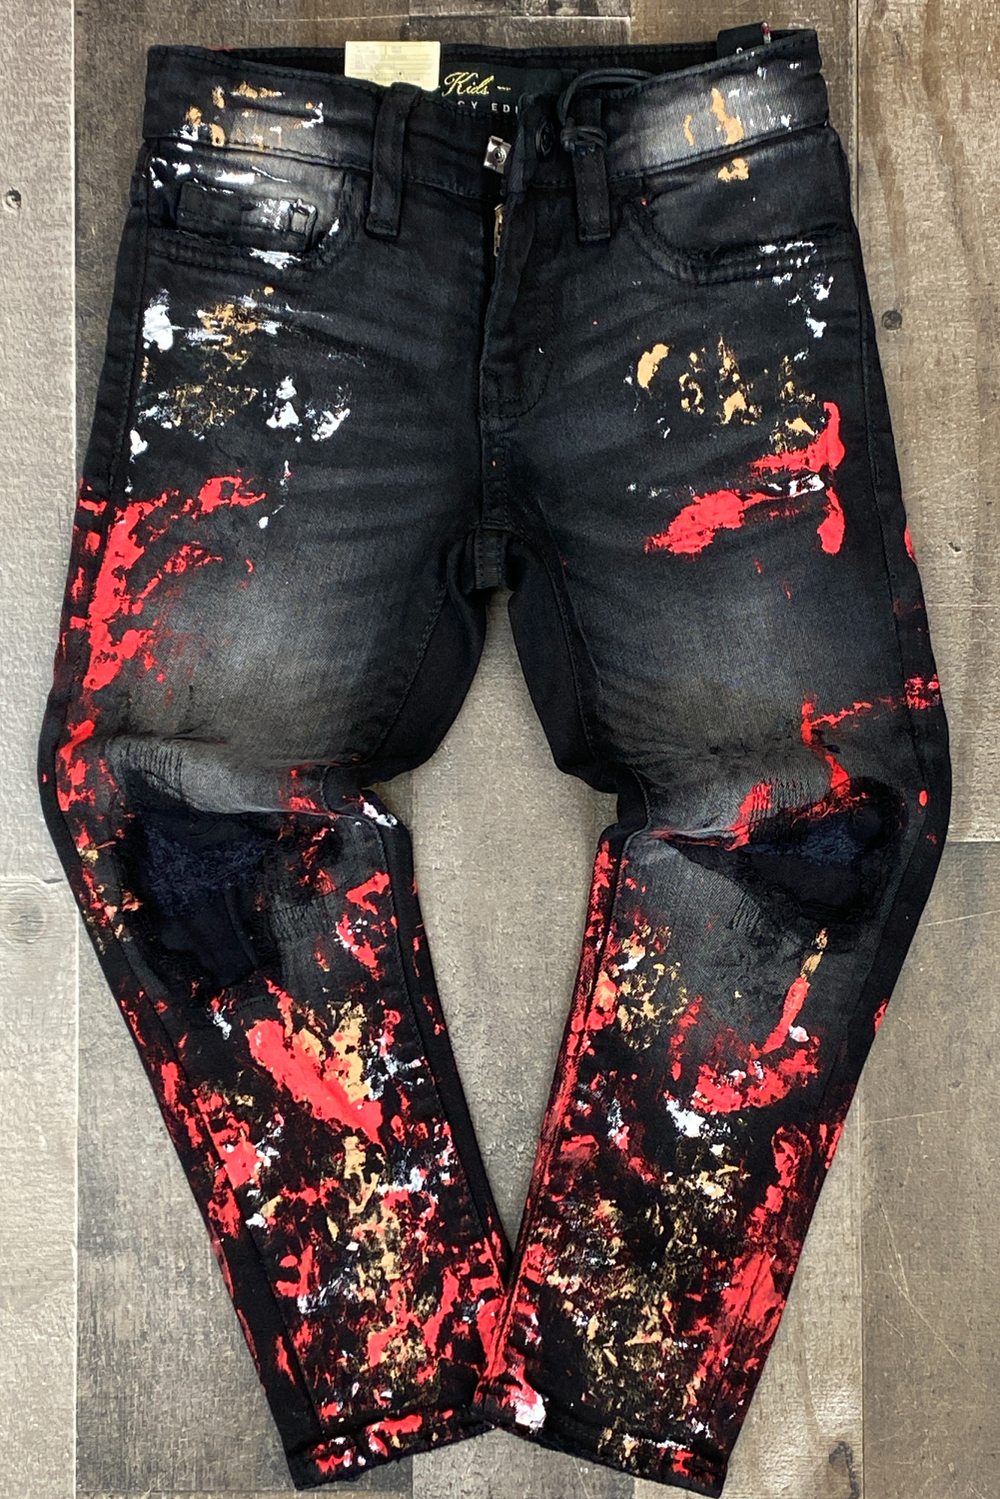 Jordan Craig- painted jeans (kids)